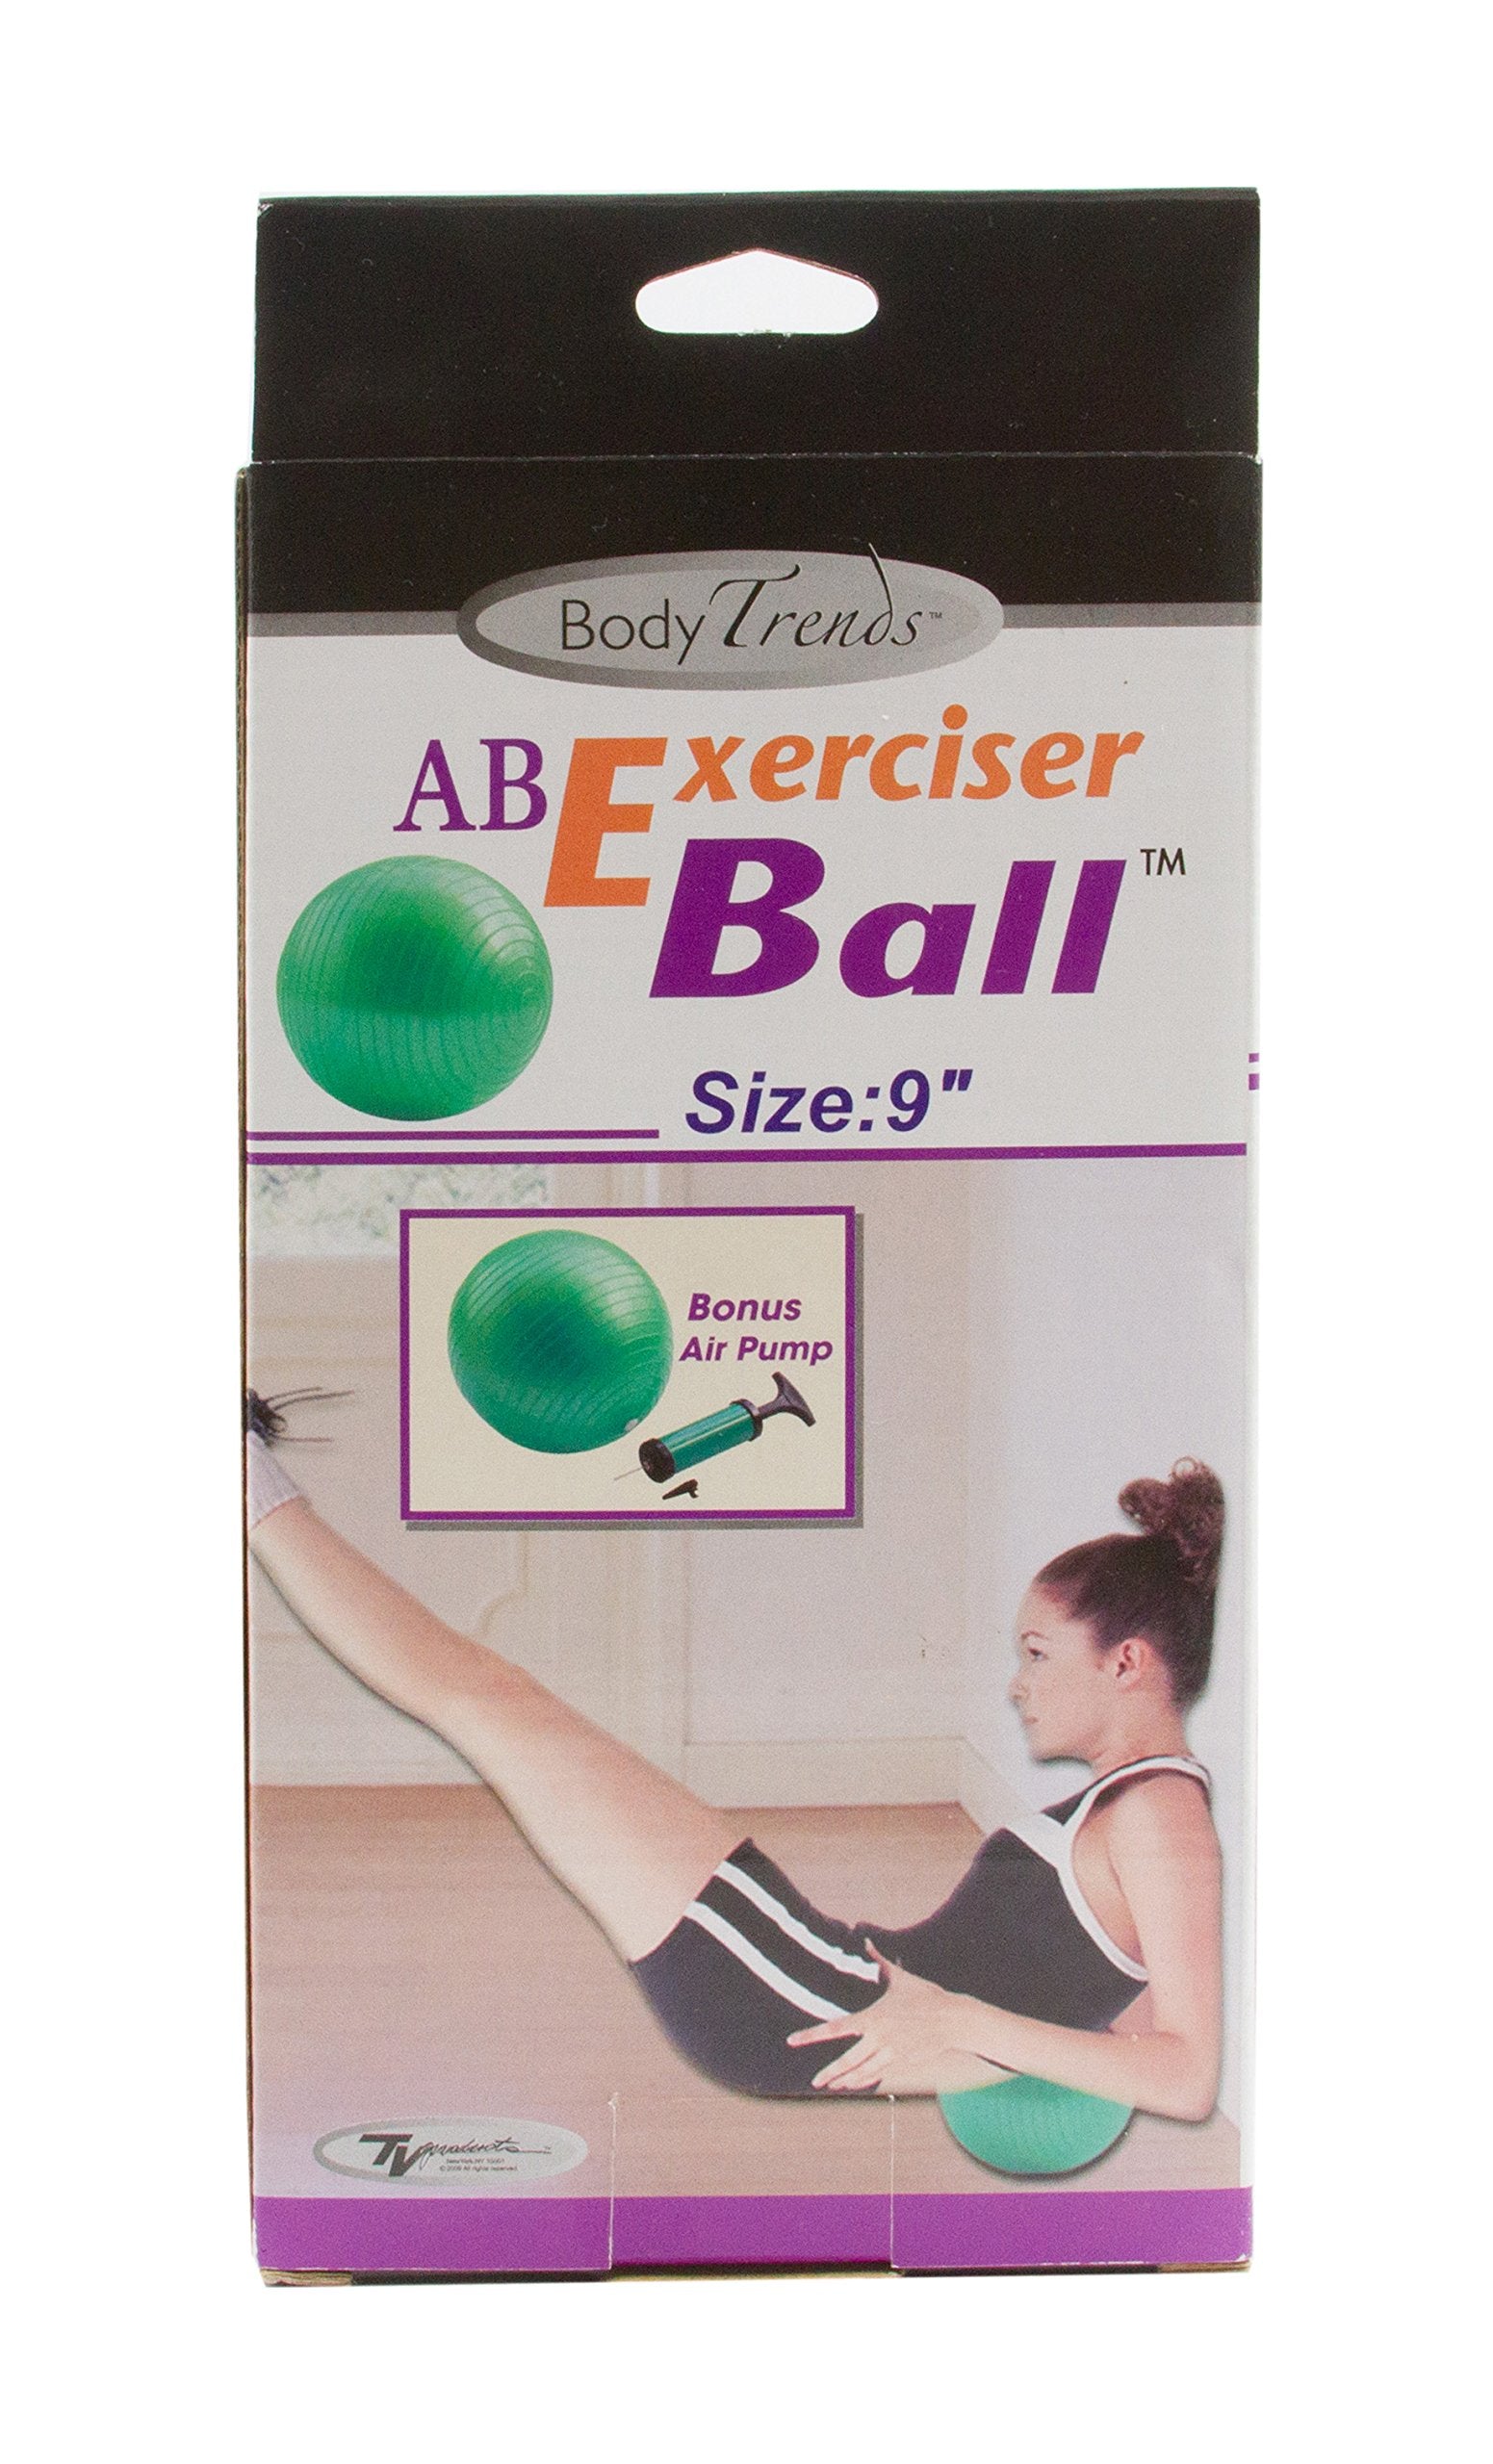 Body Trends AB Exerciser Ball 9